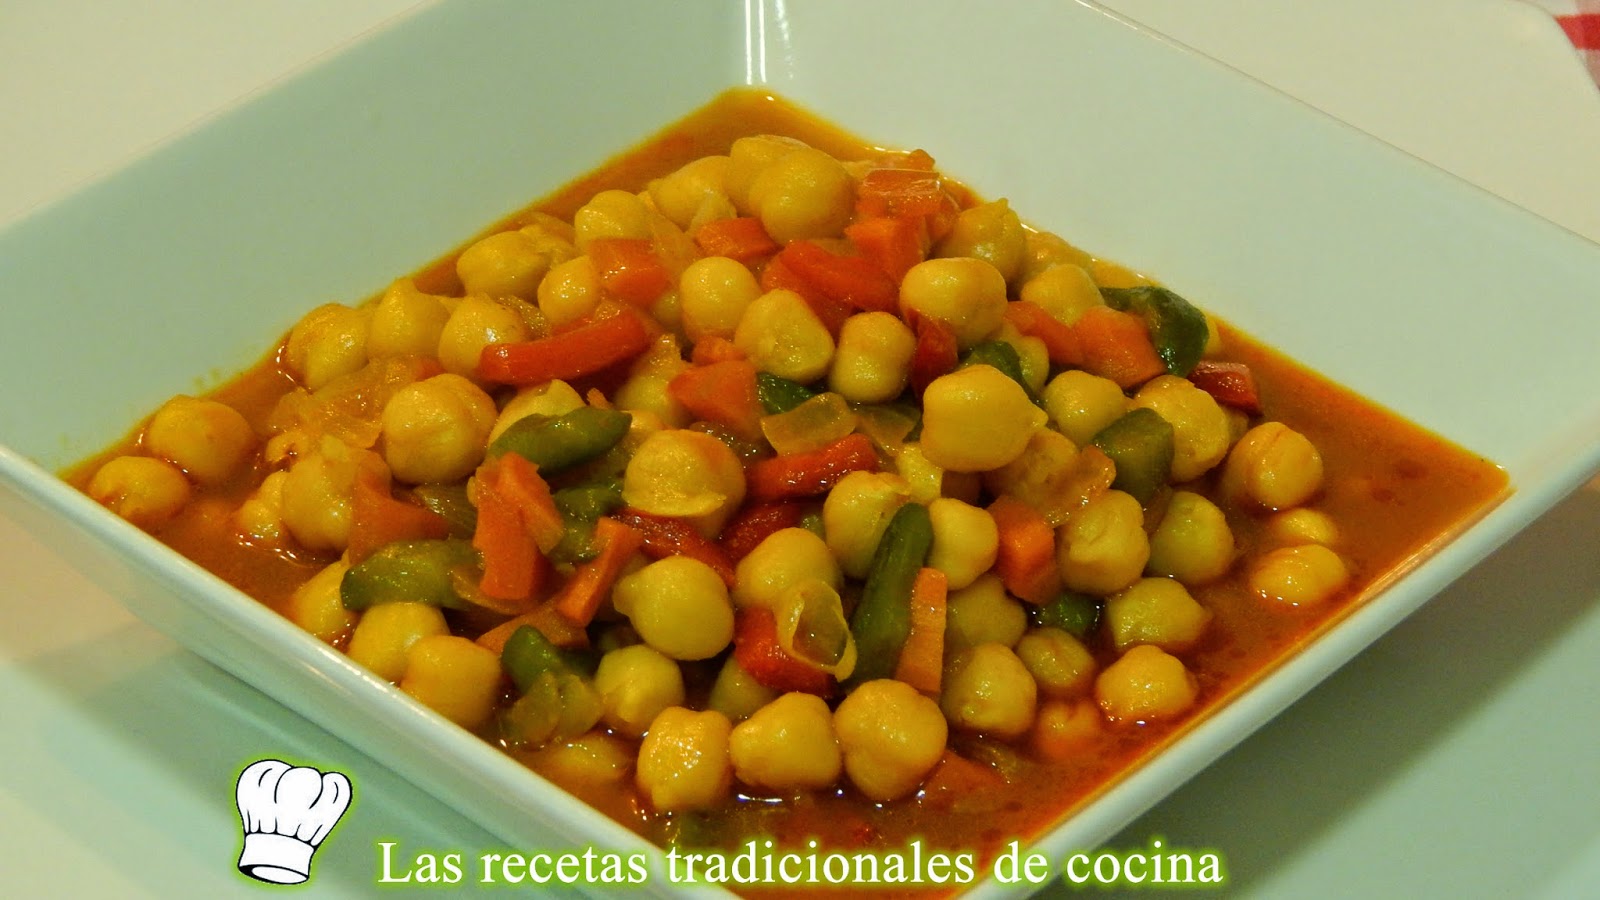 Receta de garbanzos con verduras - Recetas de cocina con sabor tradicional